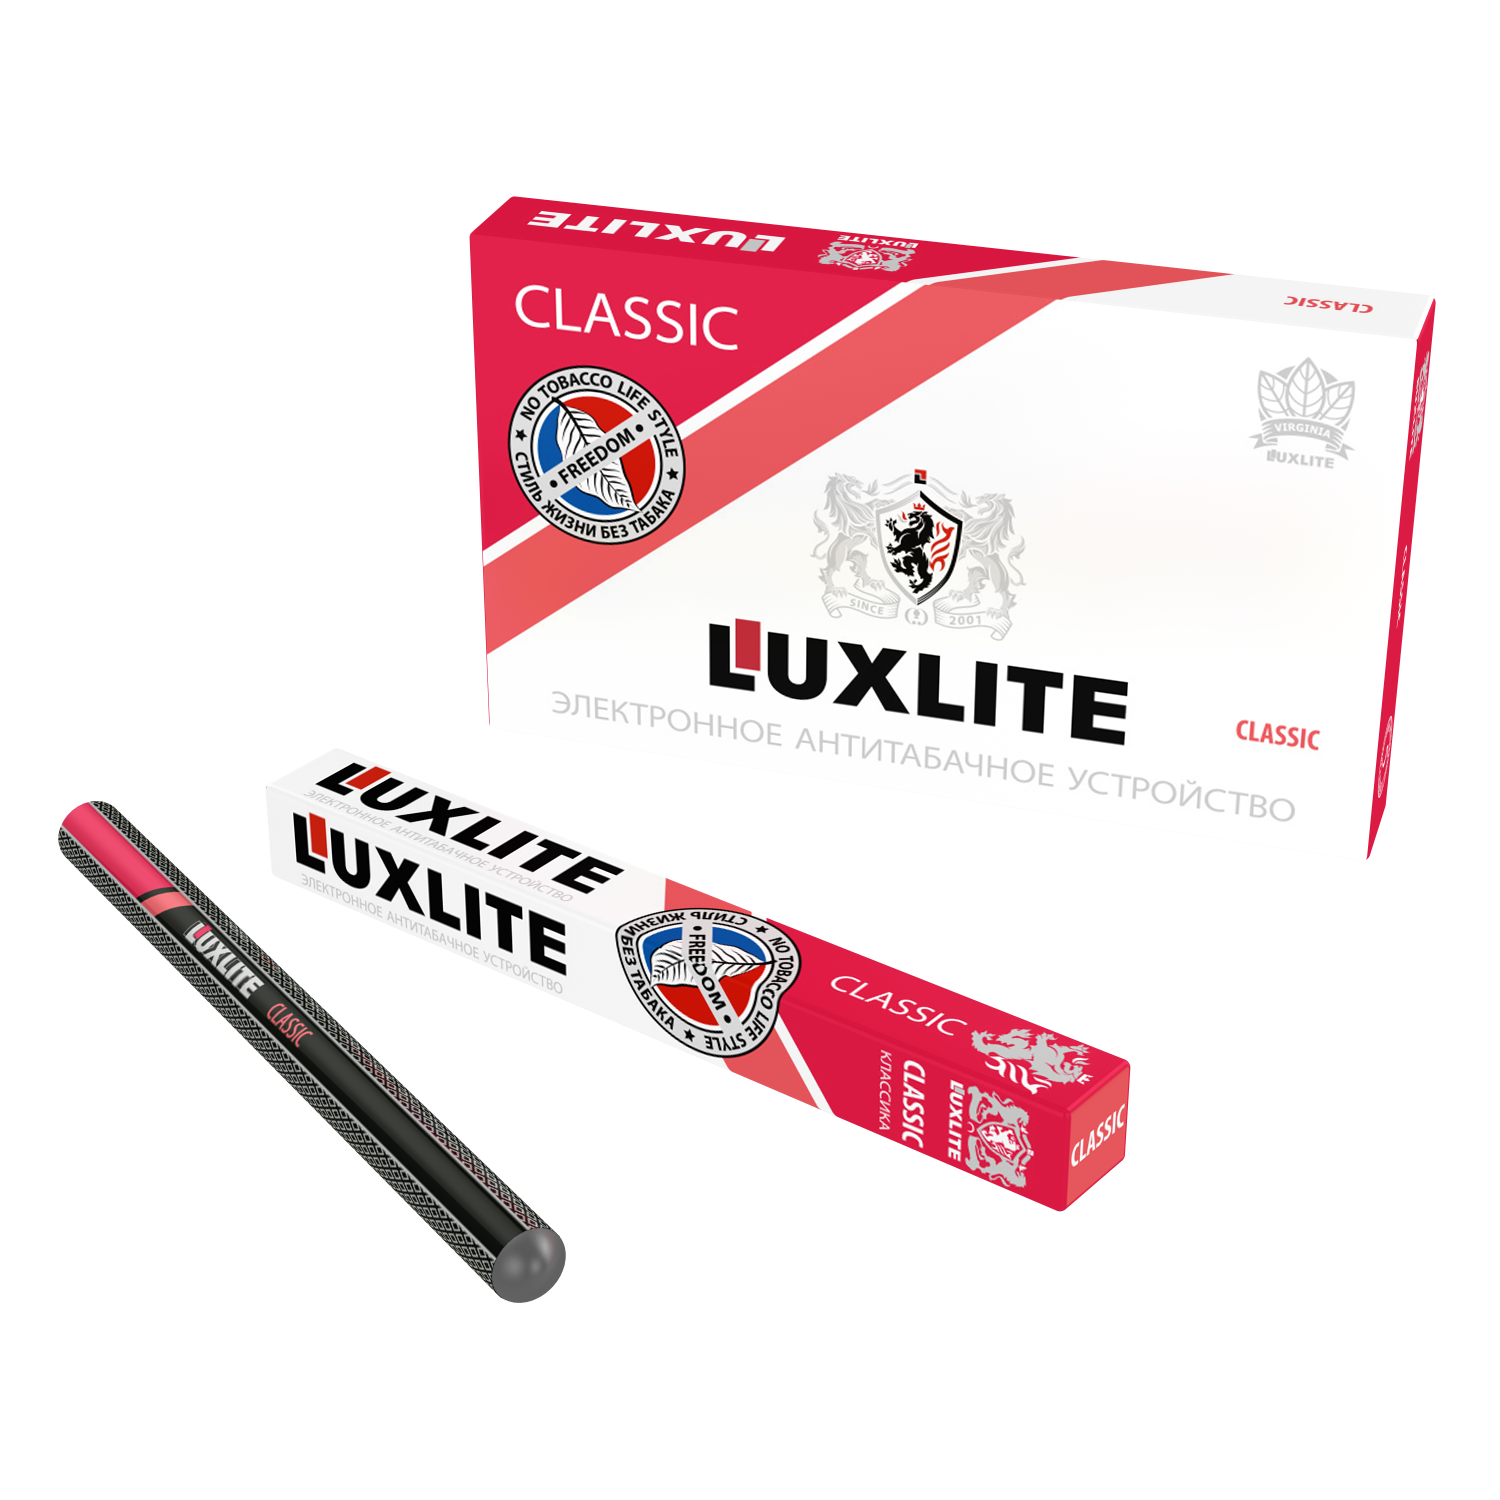 Купить сигареты табак электронные сигареты. Одноразовые электронные сигареты Люкслайт. Электронная сигарета Luxlite Classic. Одноразовые сигареты Luxlite. Luxlite электронные сигареты без никотина.